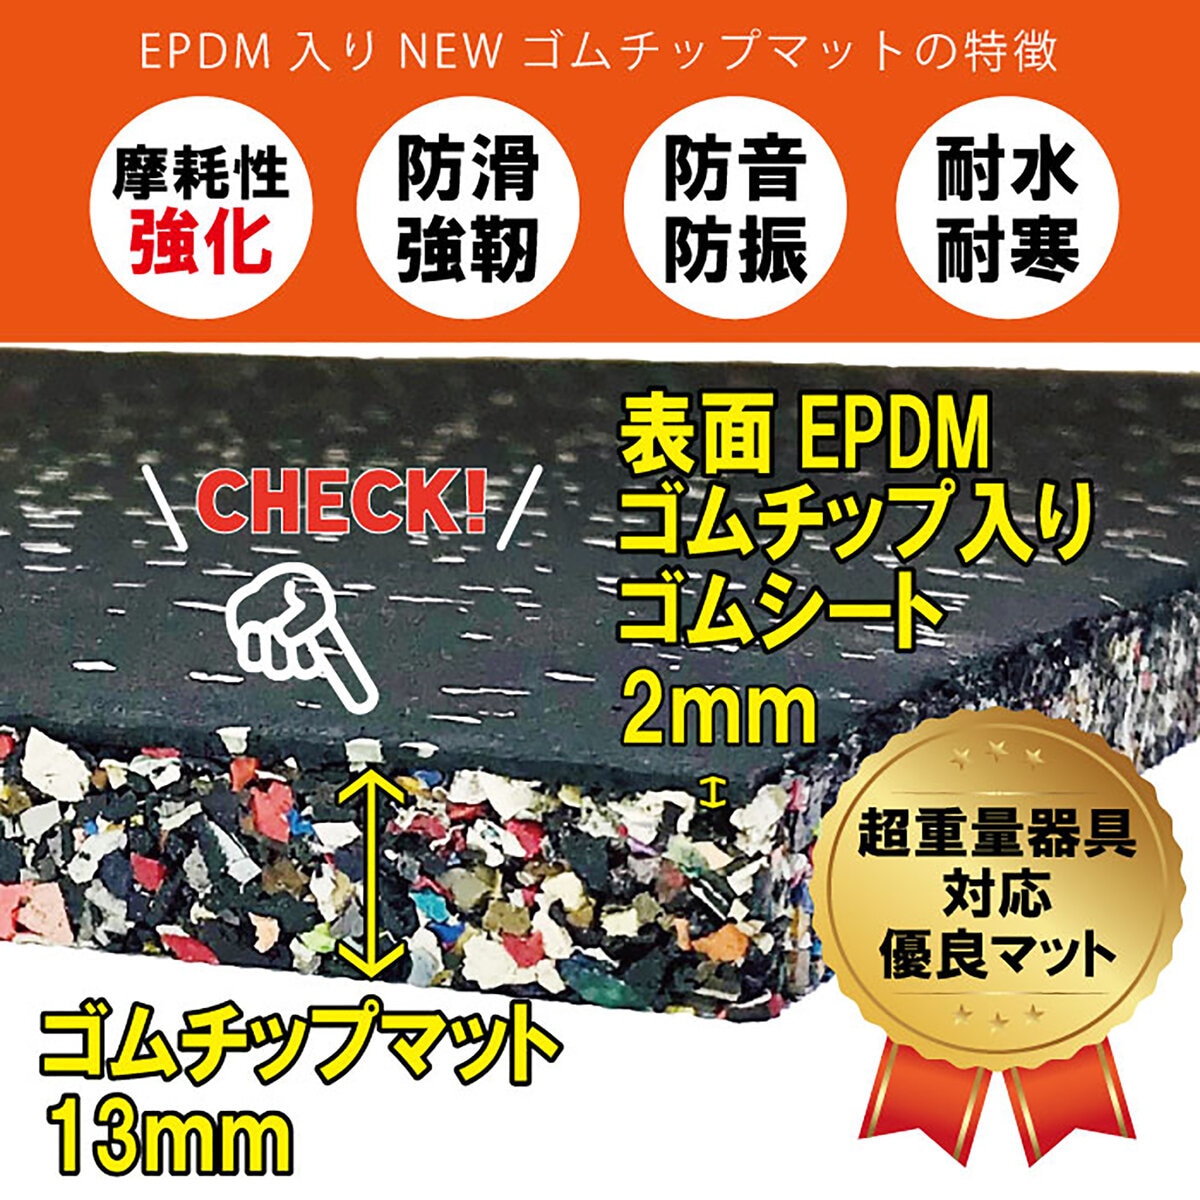 セルデス New ゴムチップマット 15ミリ厚 50cm x 50cm 8枚セット Costco Japan